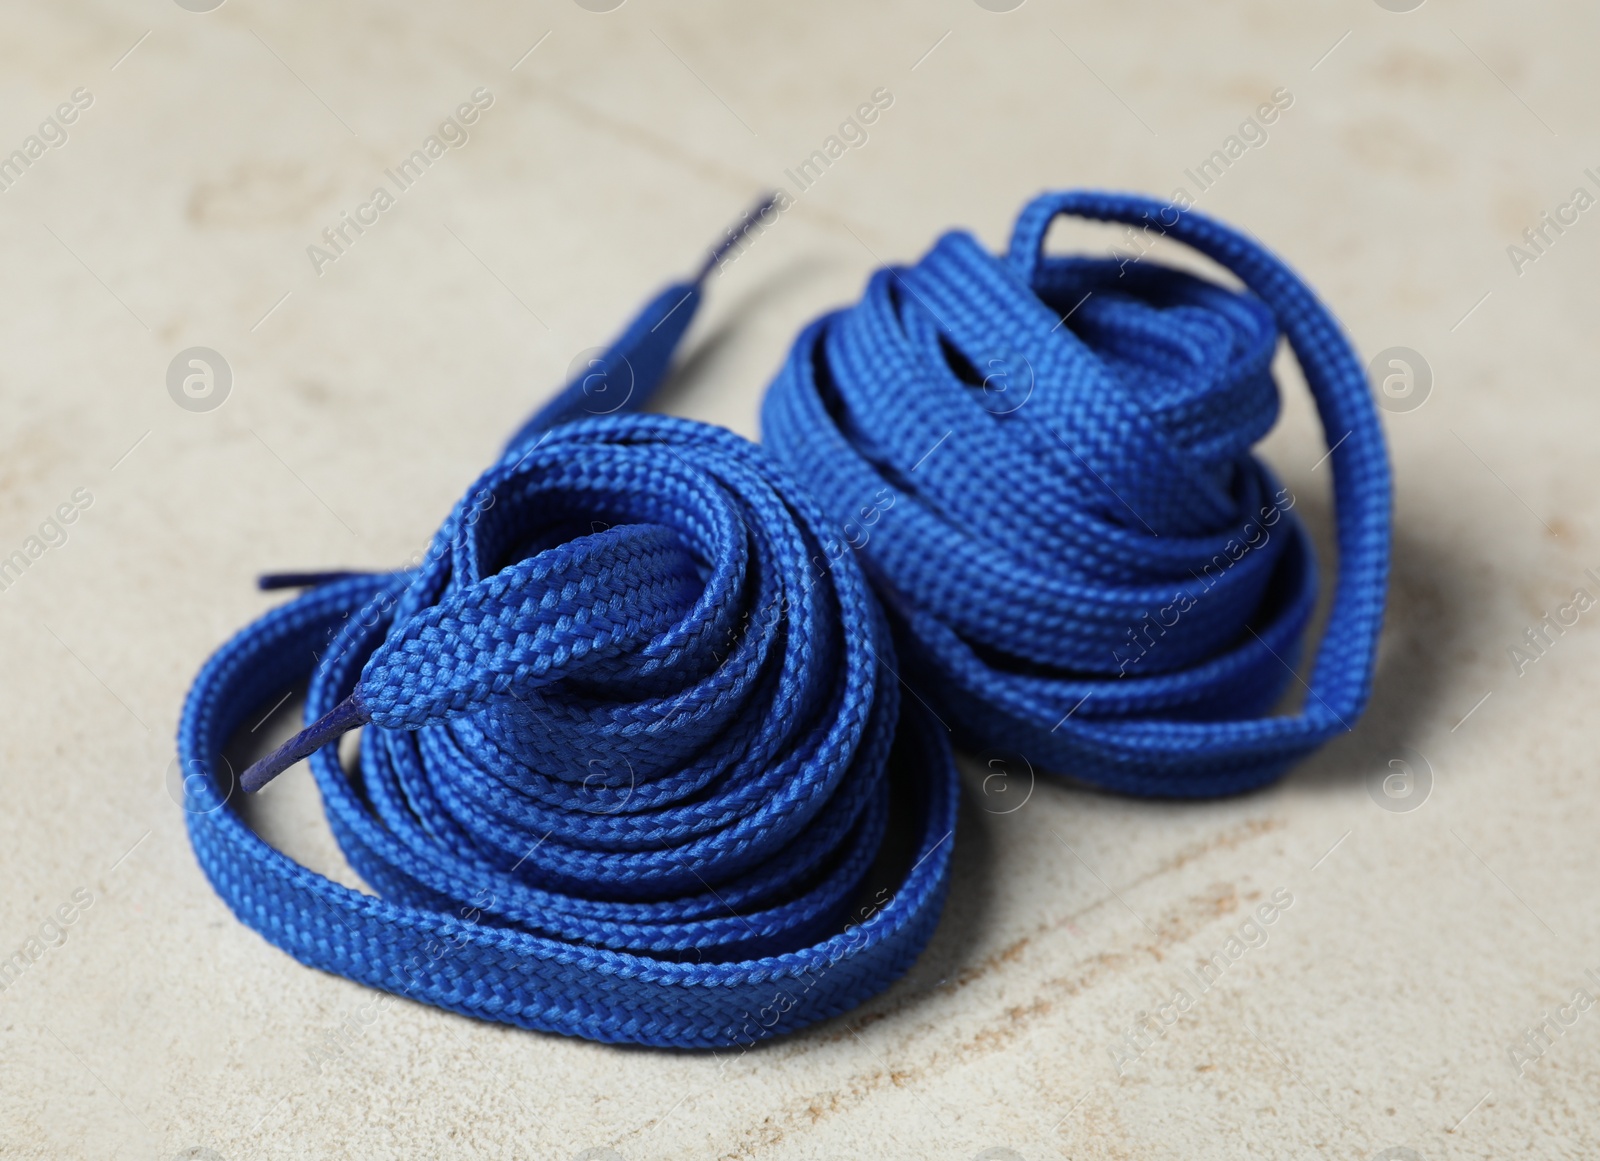 Photo of Blue shoelaces on light background. Stylish accessory